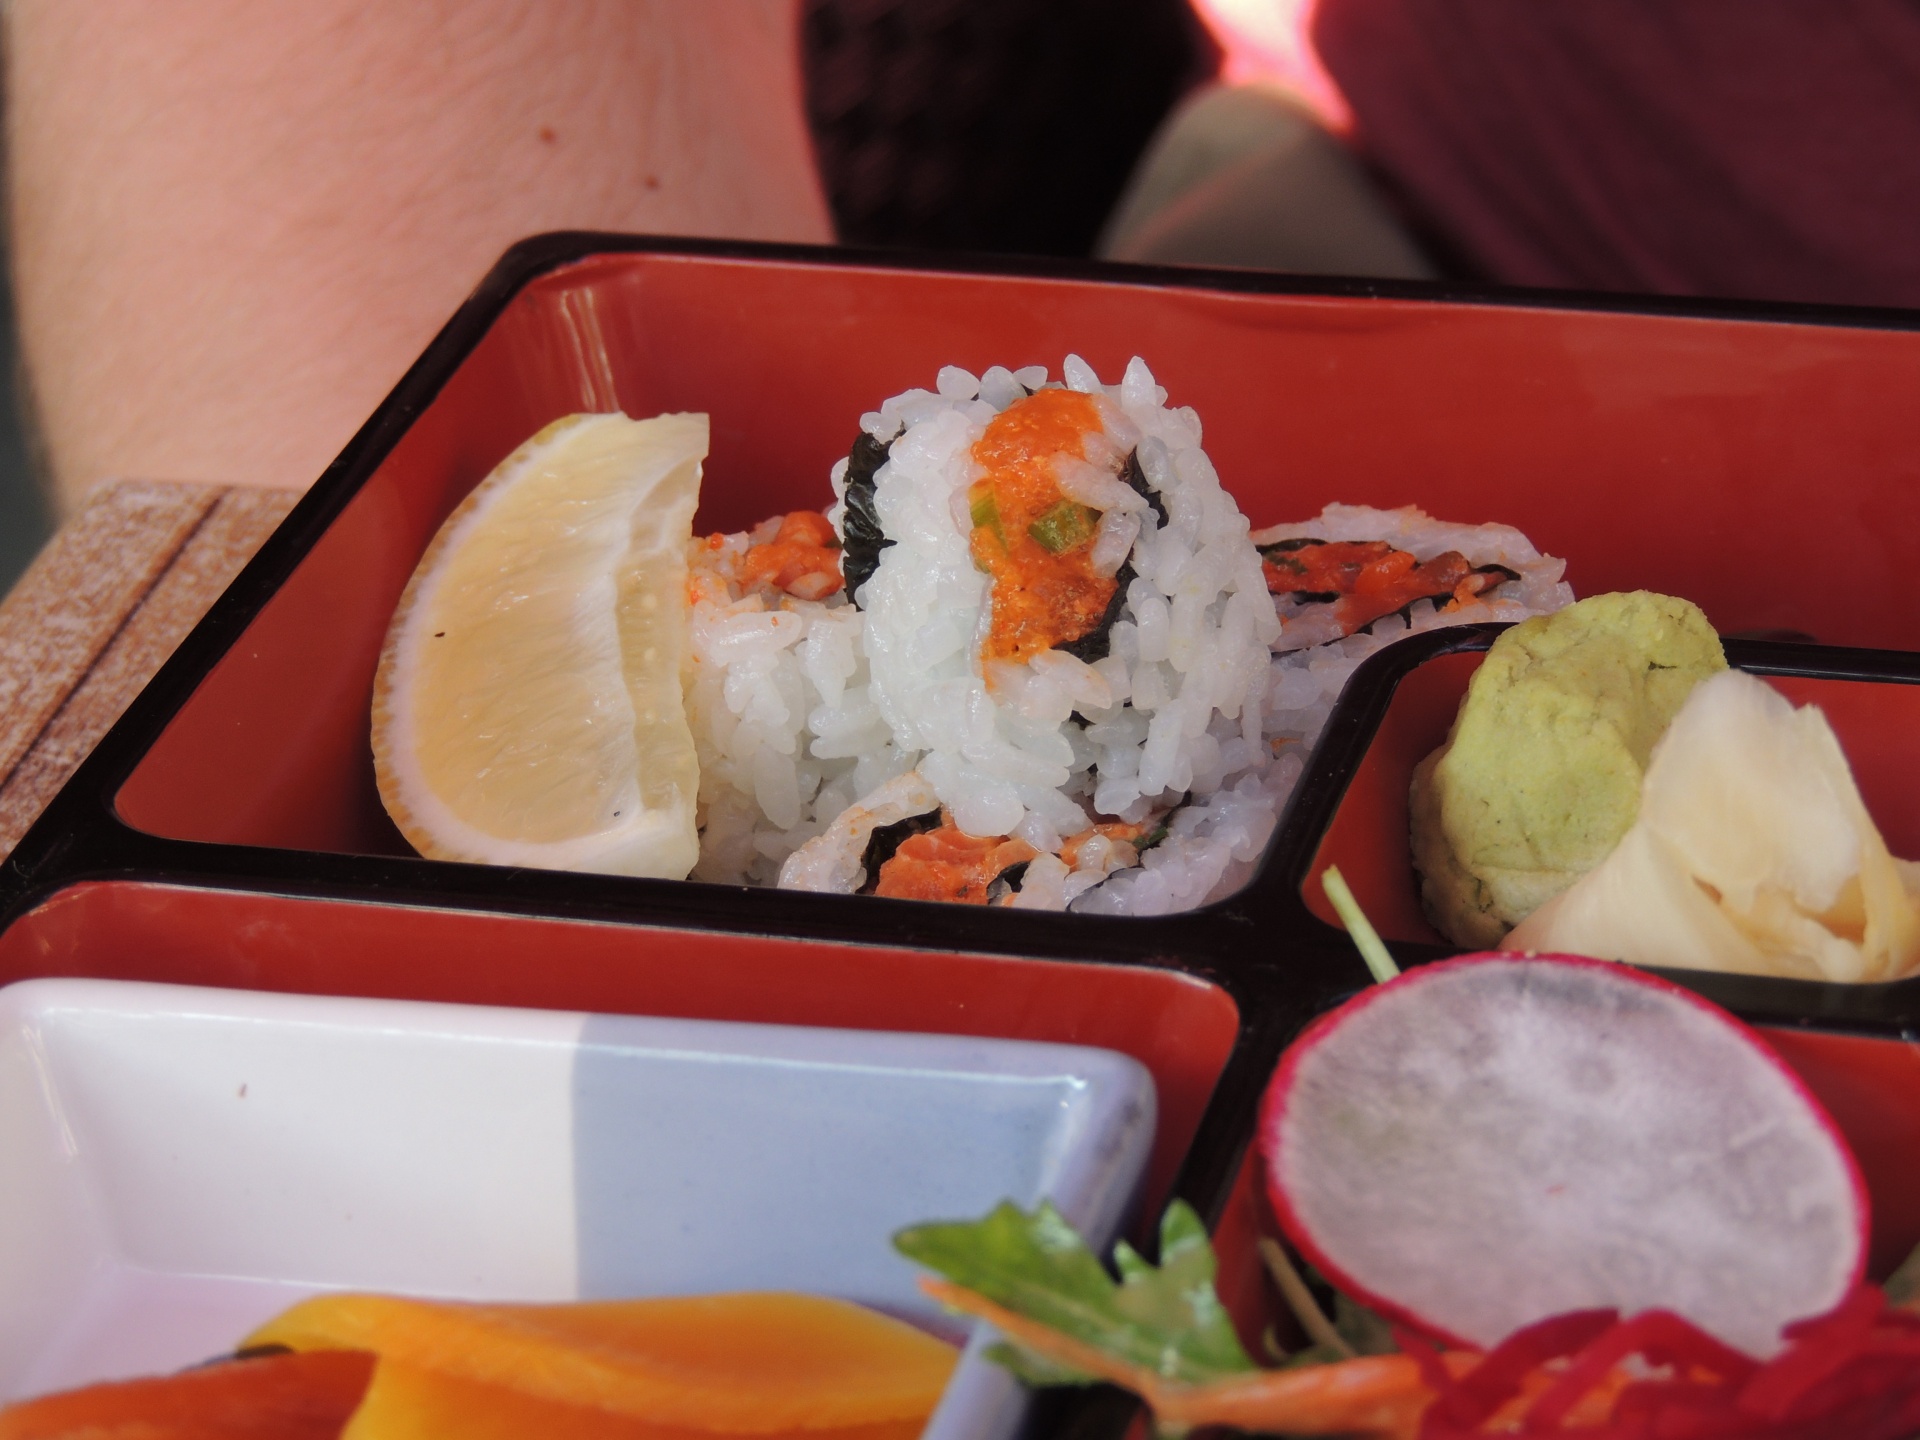 寿司便当盒